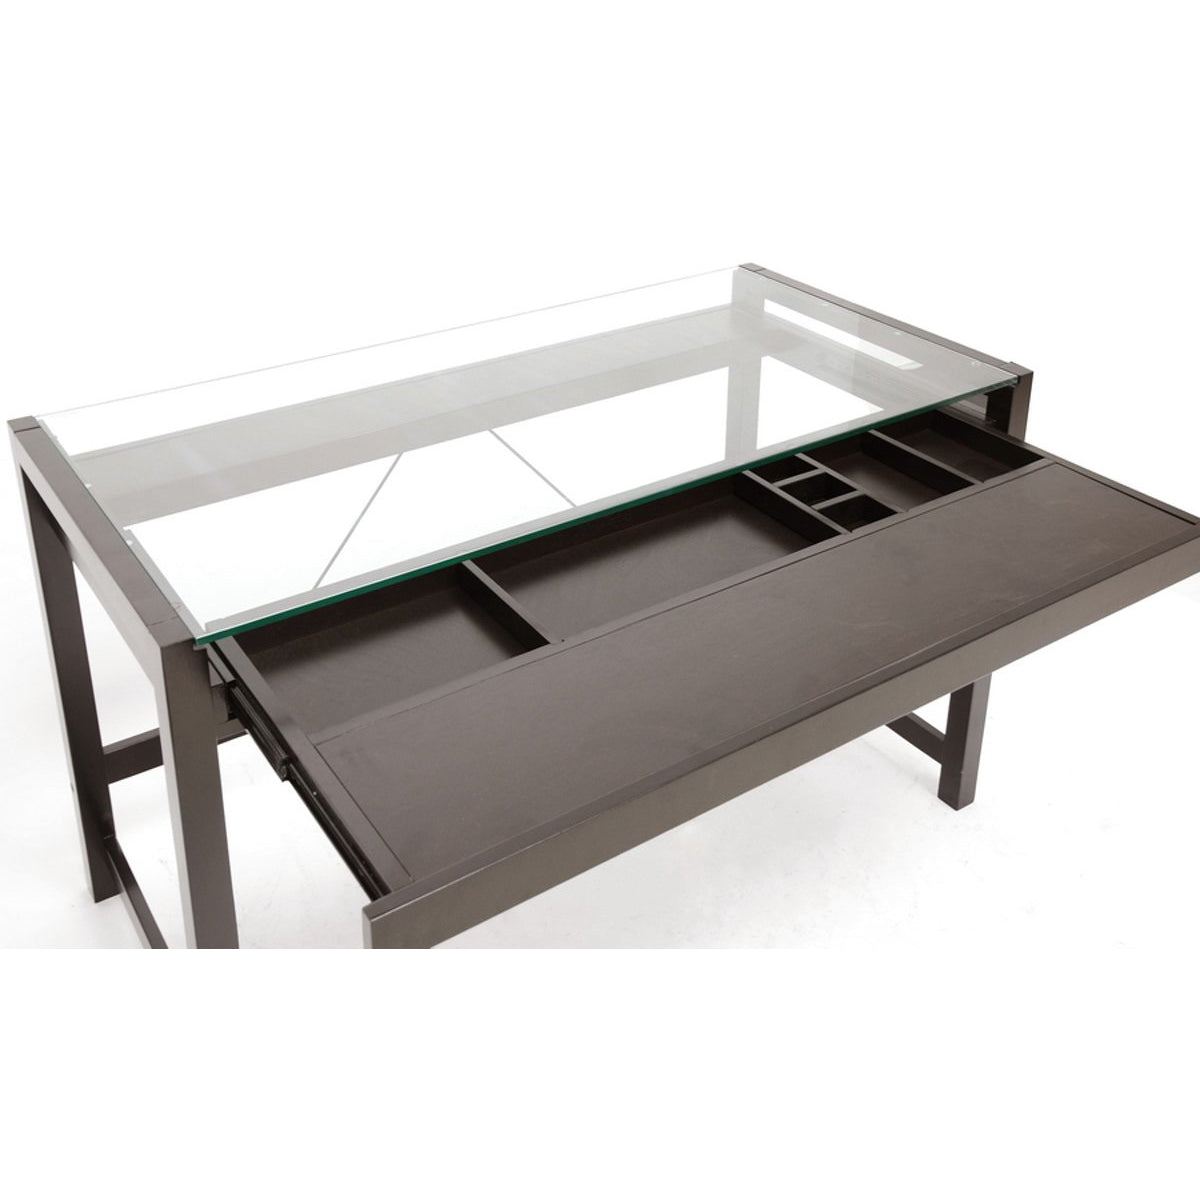 Baxton Studio Idabel Dark Brown Wood Modern Desk with Glass Top Baxton Studio-Desks-Minimal And Modern - 3